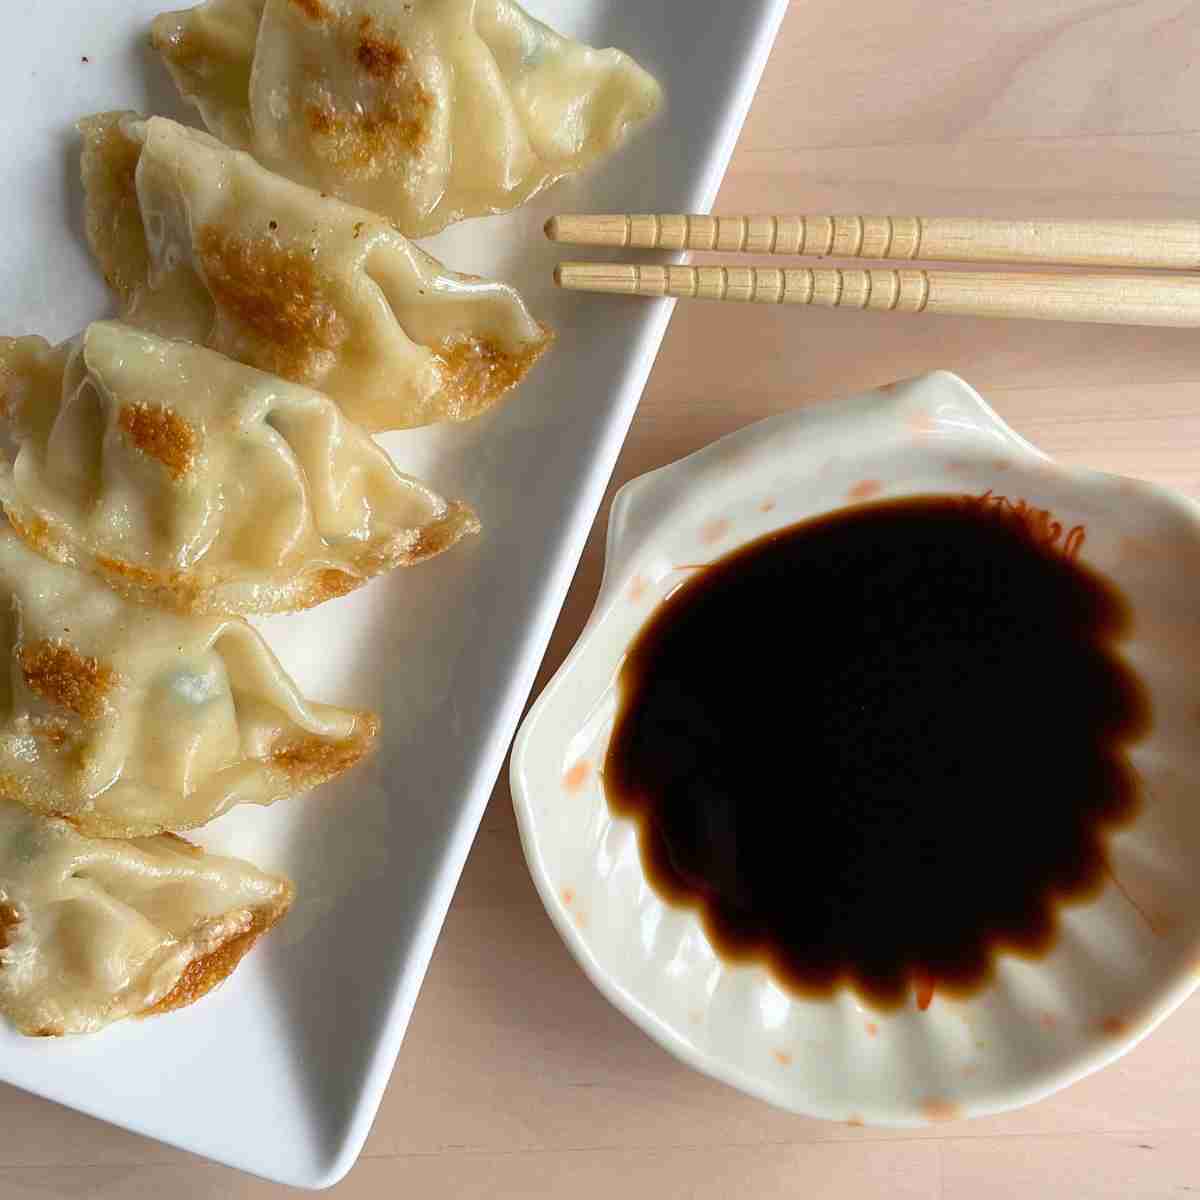 Plain black vinegar dipping sauce for dumplings